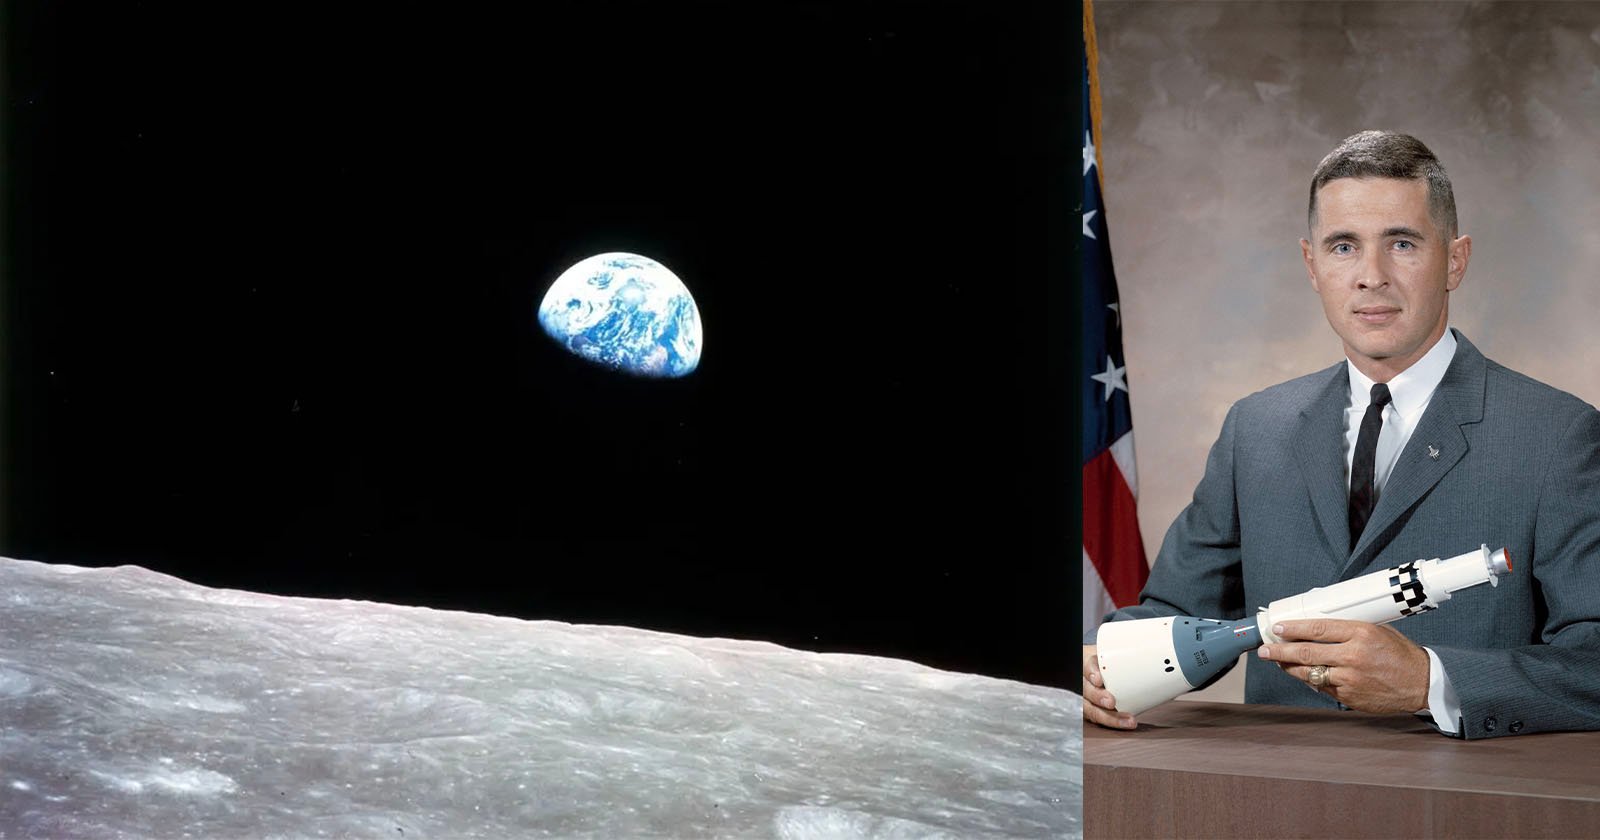 Astronaut Bill Anders, die de beroemde “Earthrise”-foto maakte, komt om bij een vliegtuigongeluk